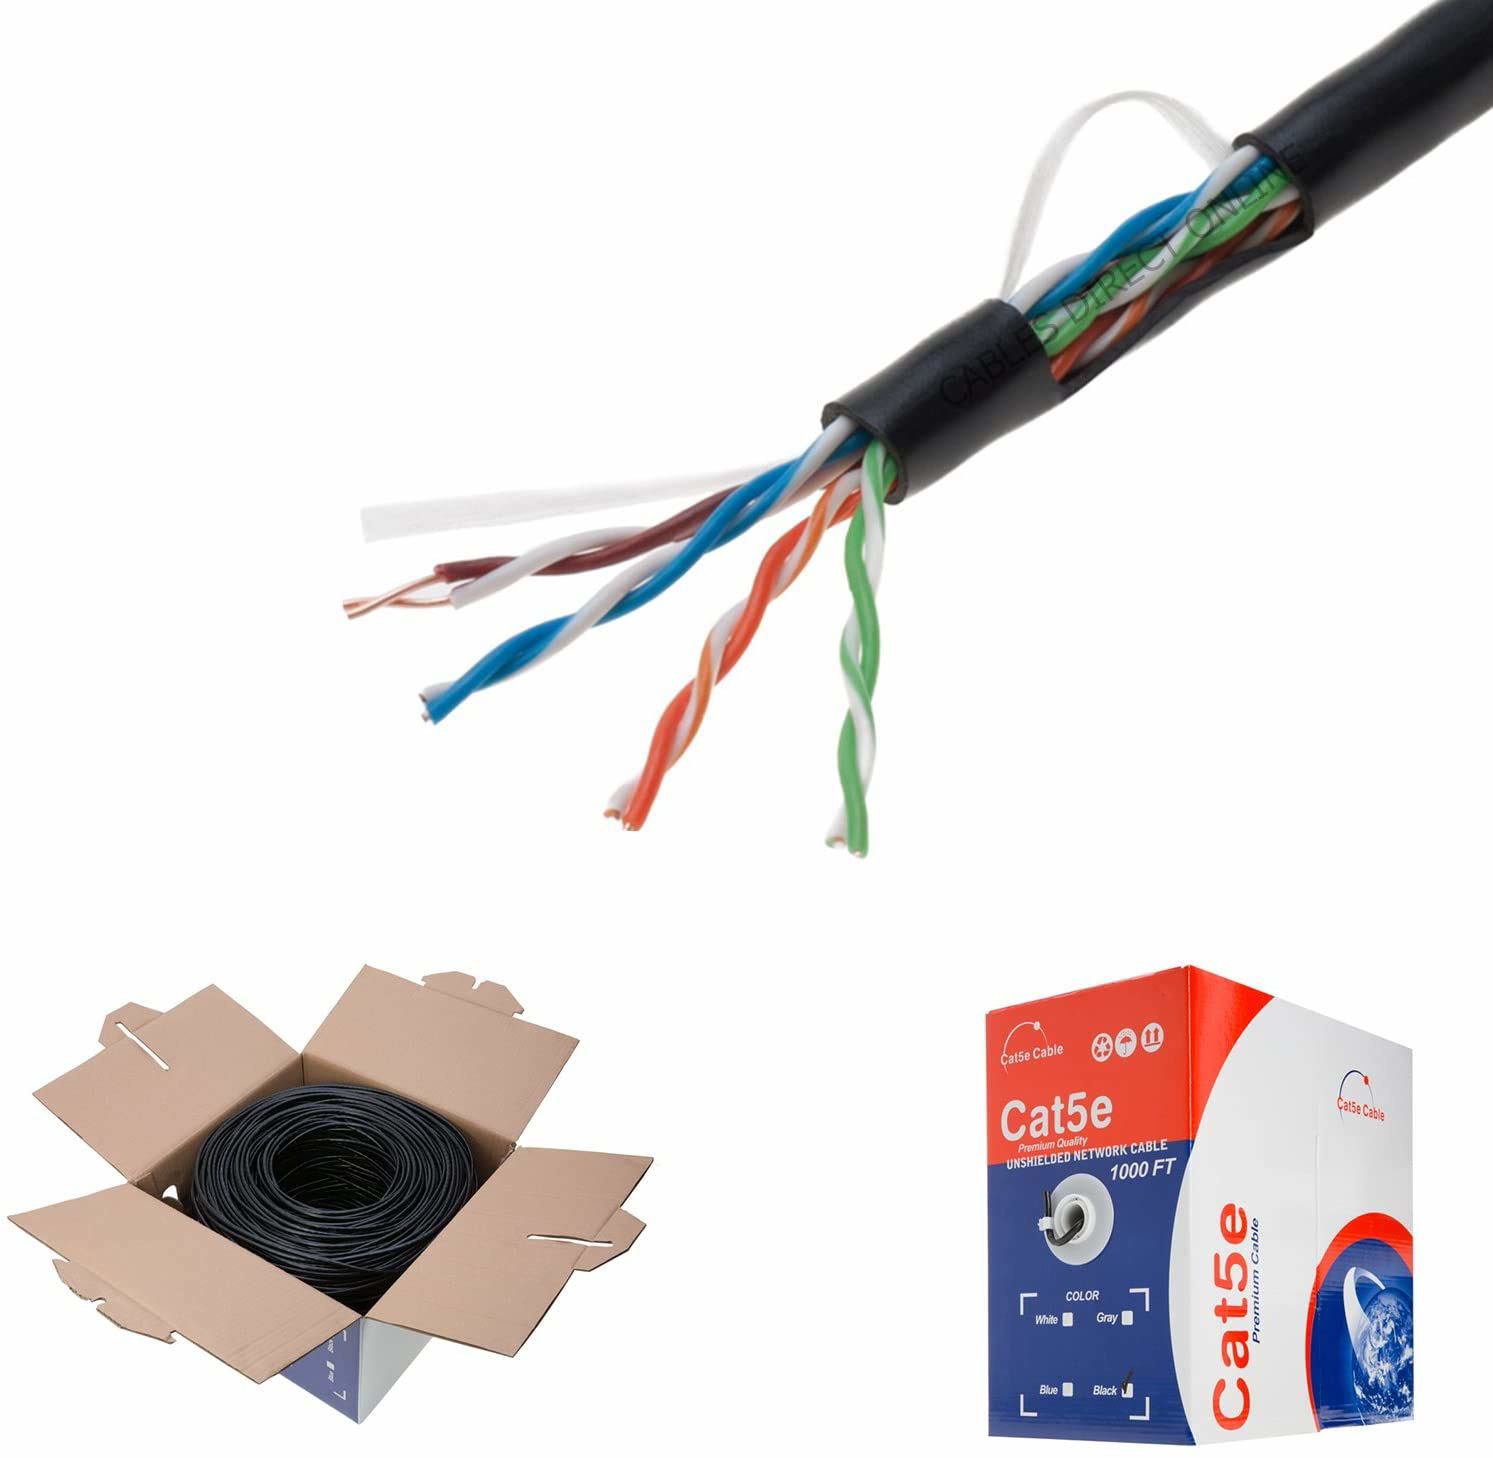 Cables Direct Online Plenum CAT5e 1000FT CMP Cable Black Solid 24 AWG Bulk Box C